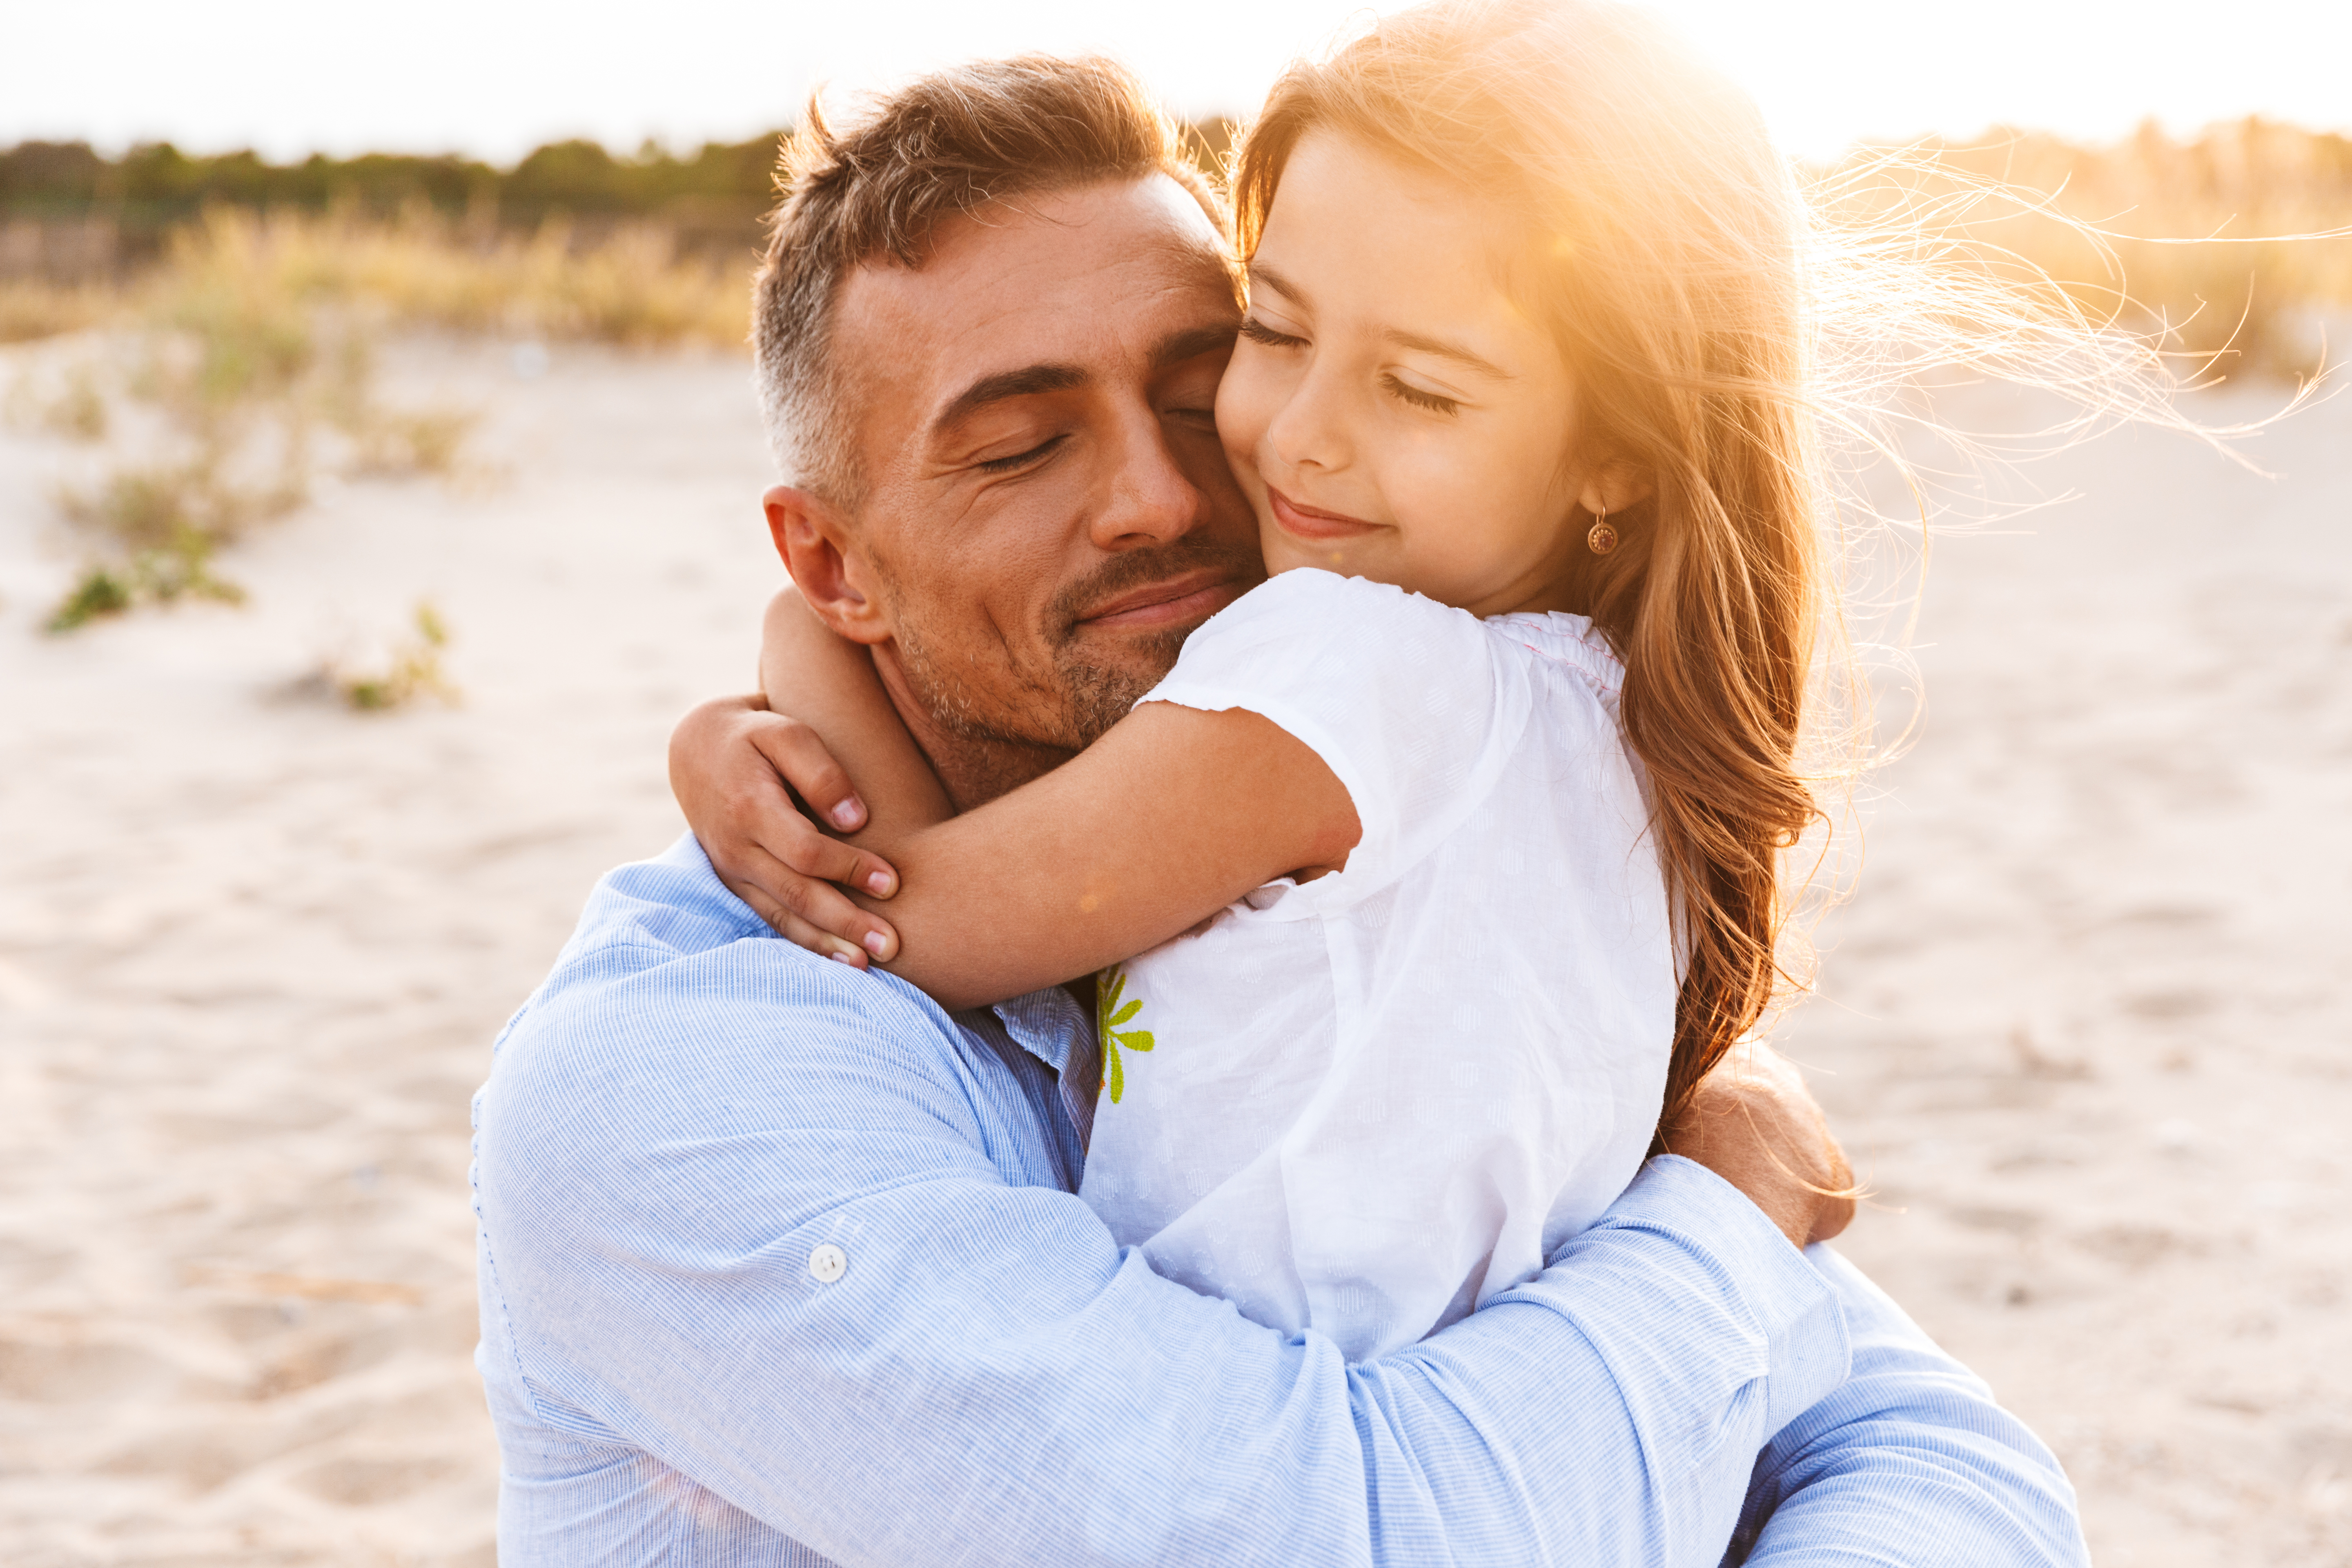 Père heureux serrant sa petite fille dans ses bras sur la plage | Source : Shutterstock